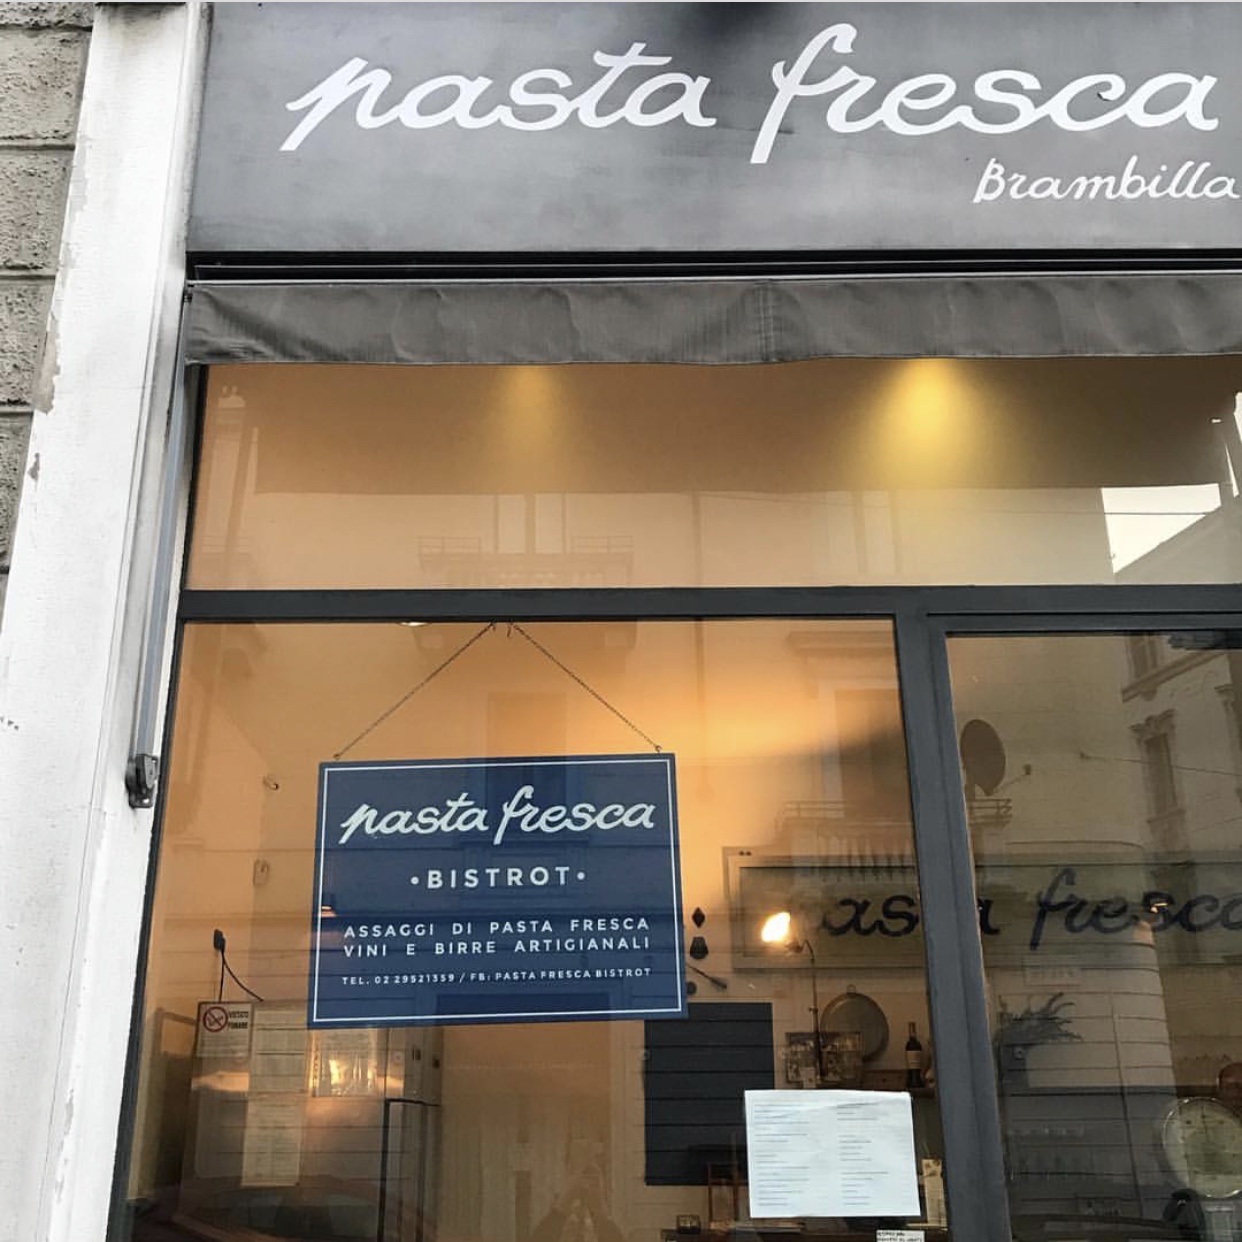 フラワーショップW Fioriの隣にある、シルヴィアお薦めのフレッシュパスタの専門店、pasta fresca Brambilla(写真）では、こちらで購入してお家で美味しいパスタを楽しめるだけではなく、店内でワインやクラフトビールを飲みながらパスタ料理を頂くことができます。
彼女達の地元オススメバール・カフェは、Pandenus、そしてジェラート屋さんは、ミラノで美味しいジェラテリアの一つだというLa gelateria Concordiaは、特にフレッシュな果物がふんだんに使われているグラニータ（イタリア風フラッペ）がオススメだそう。